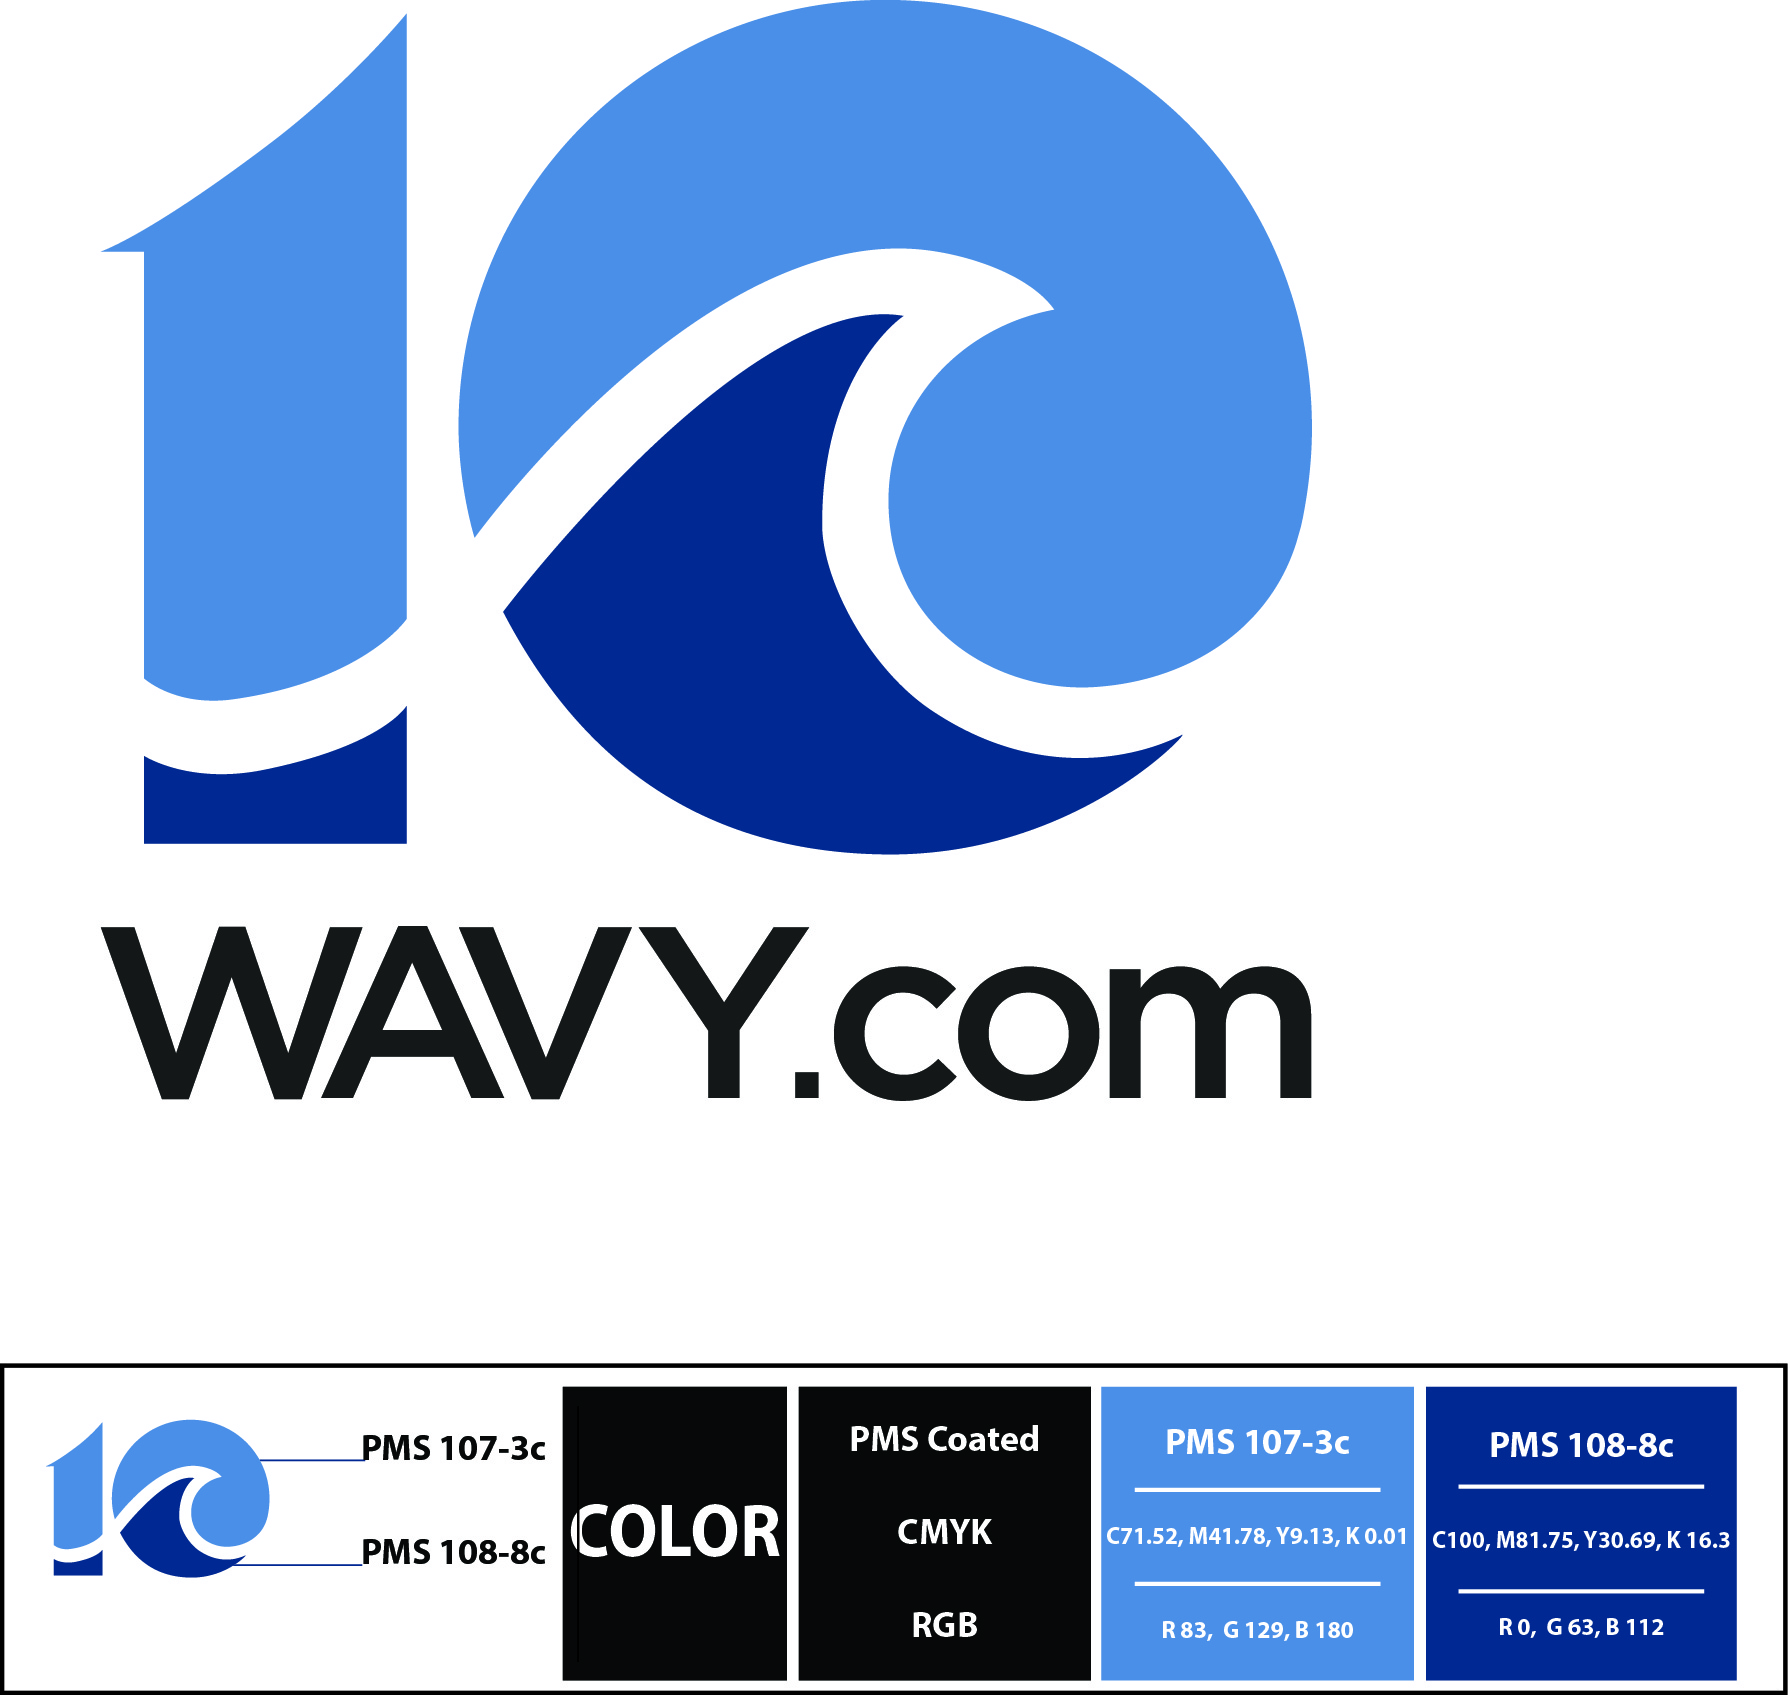 1. WAVY.com (Media)